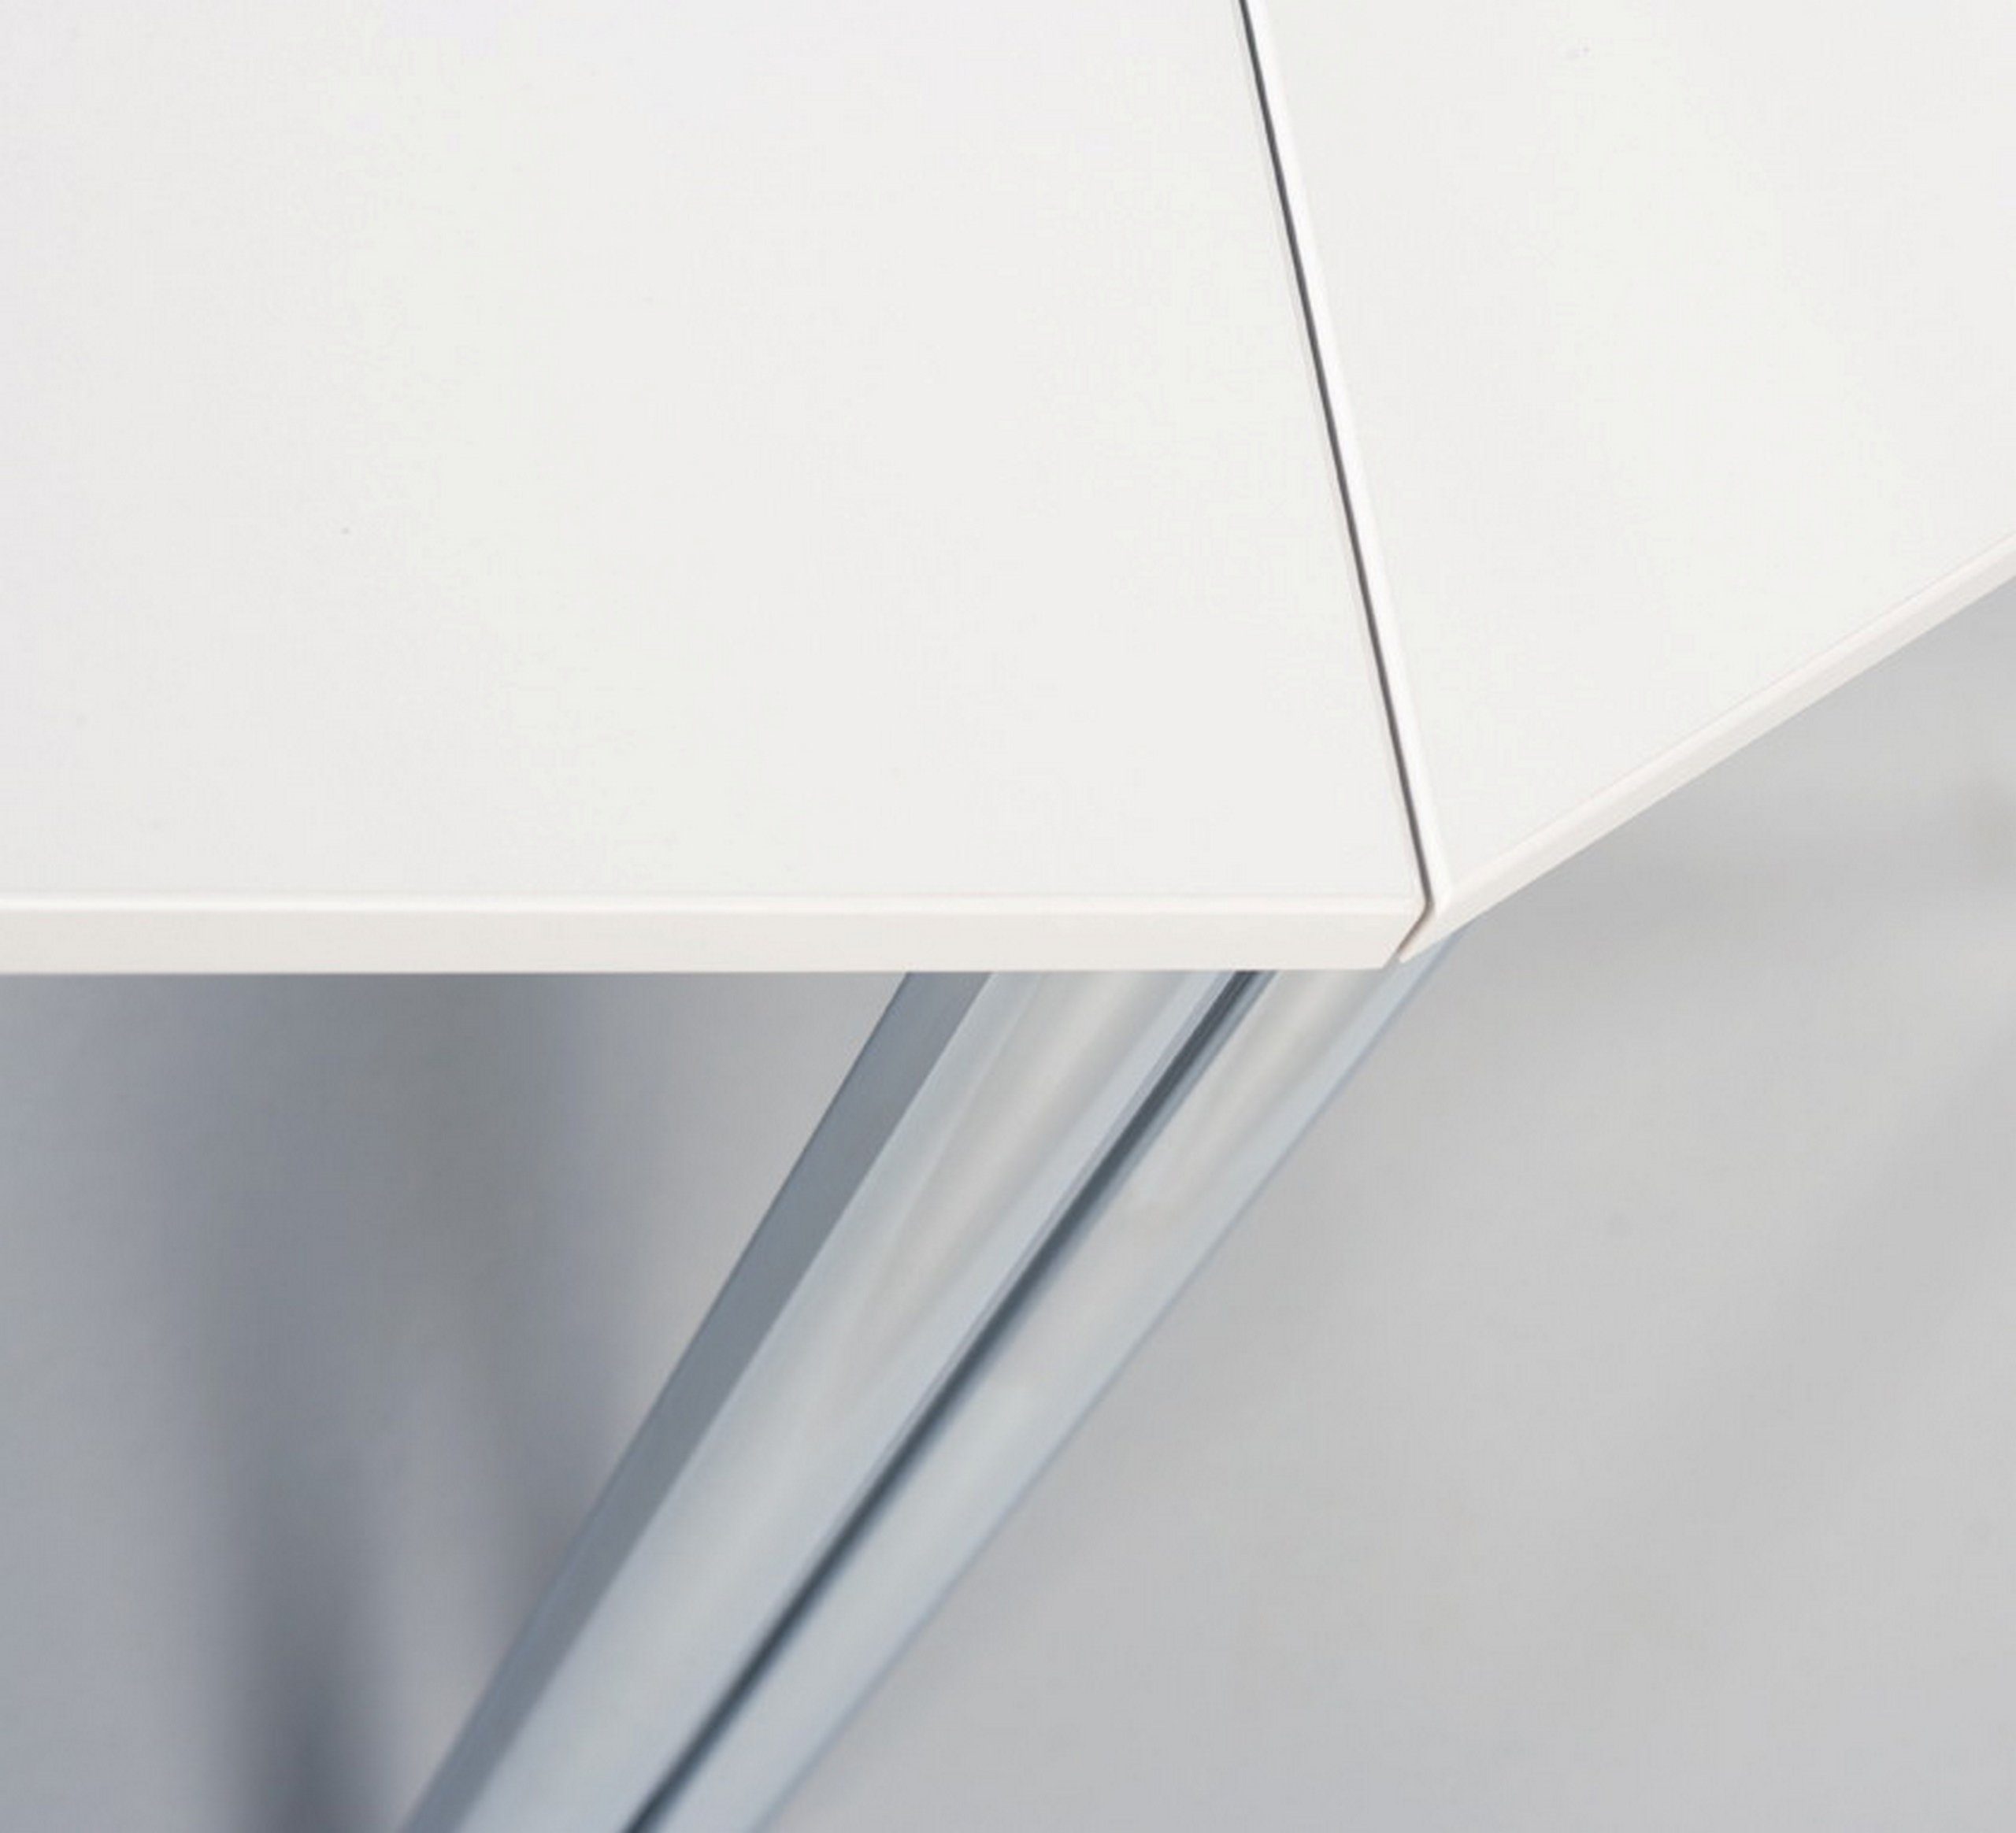 Serie-D, cm Weiß Dekor: - Rechteck: Konferenztisch Vierkantrohr - Besprechungstisch bümö schwarz Gestell: 120x80